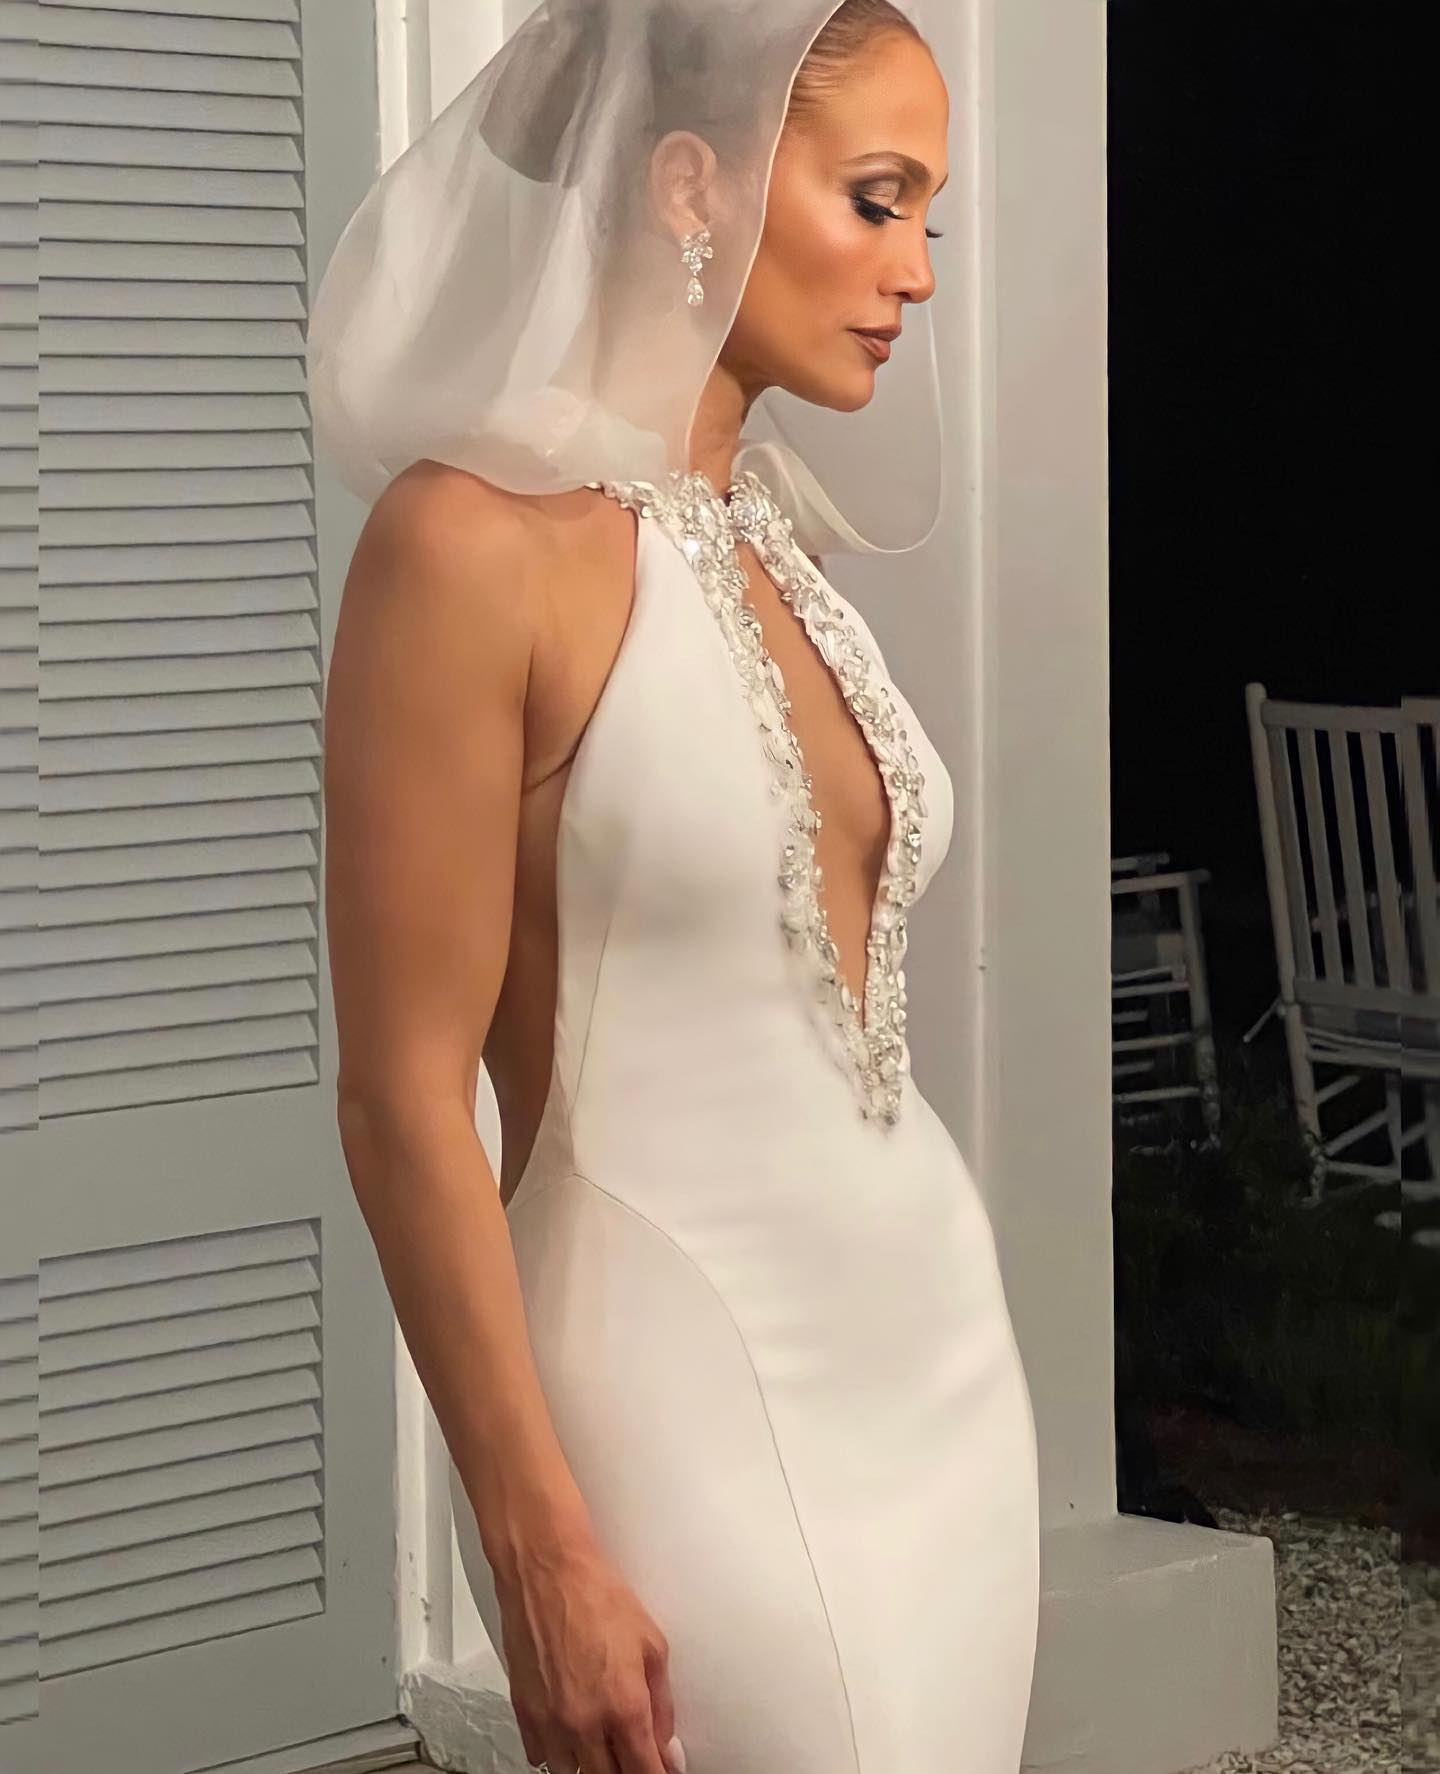 Lovely Pics Jennifer Lopezâ€™s Wedding Dress